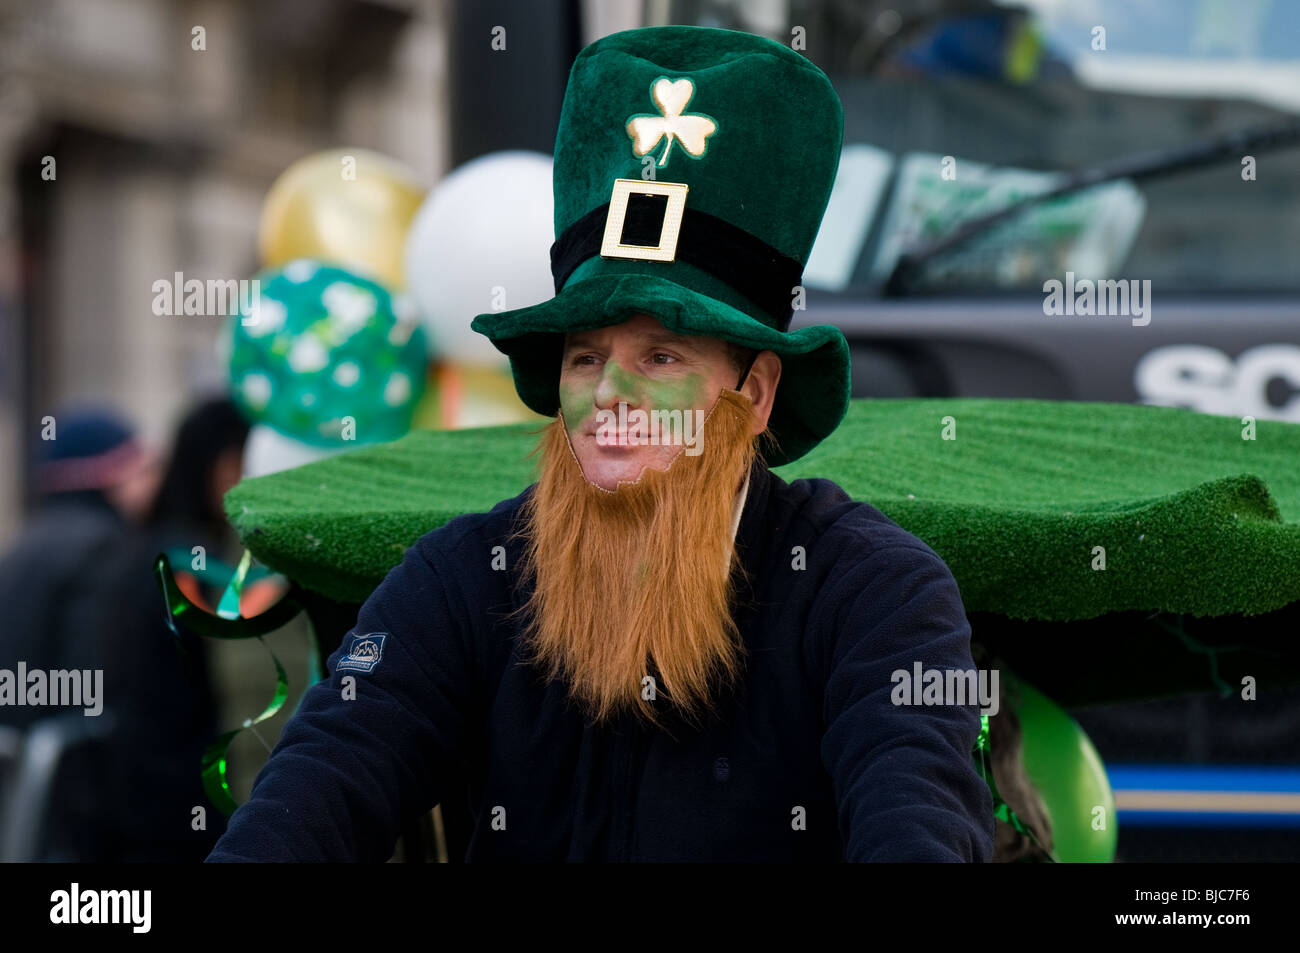 Portrait d'un homme portant un chapeau et de la nouveauté au cours de la barbe St Patricks Day Parade à Londres. Banque D'Images